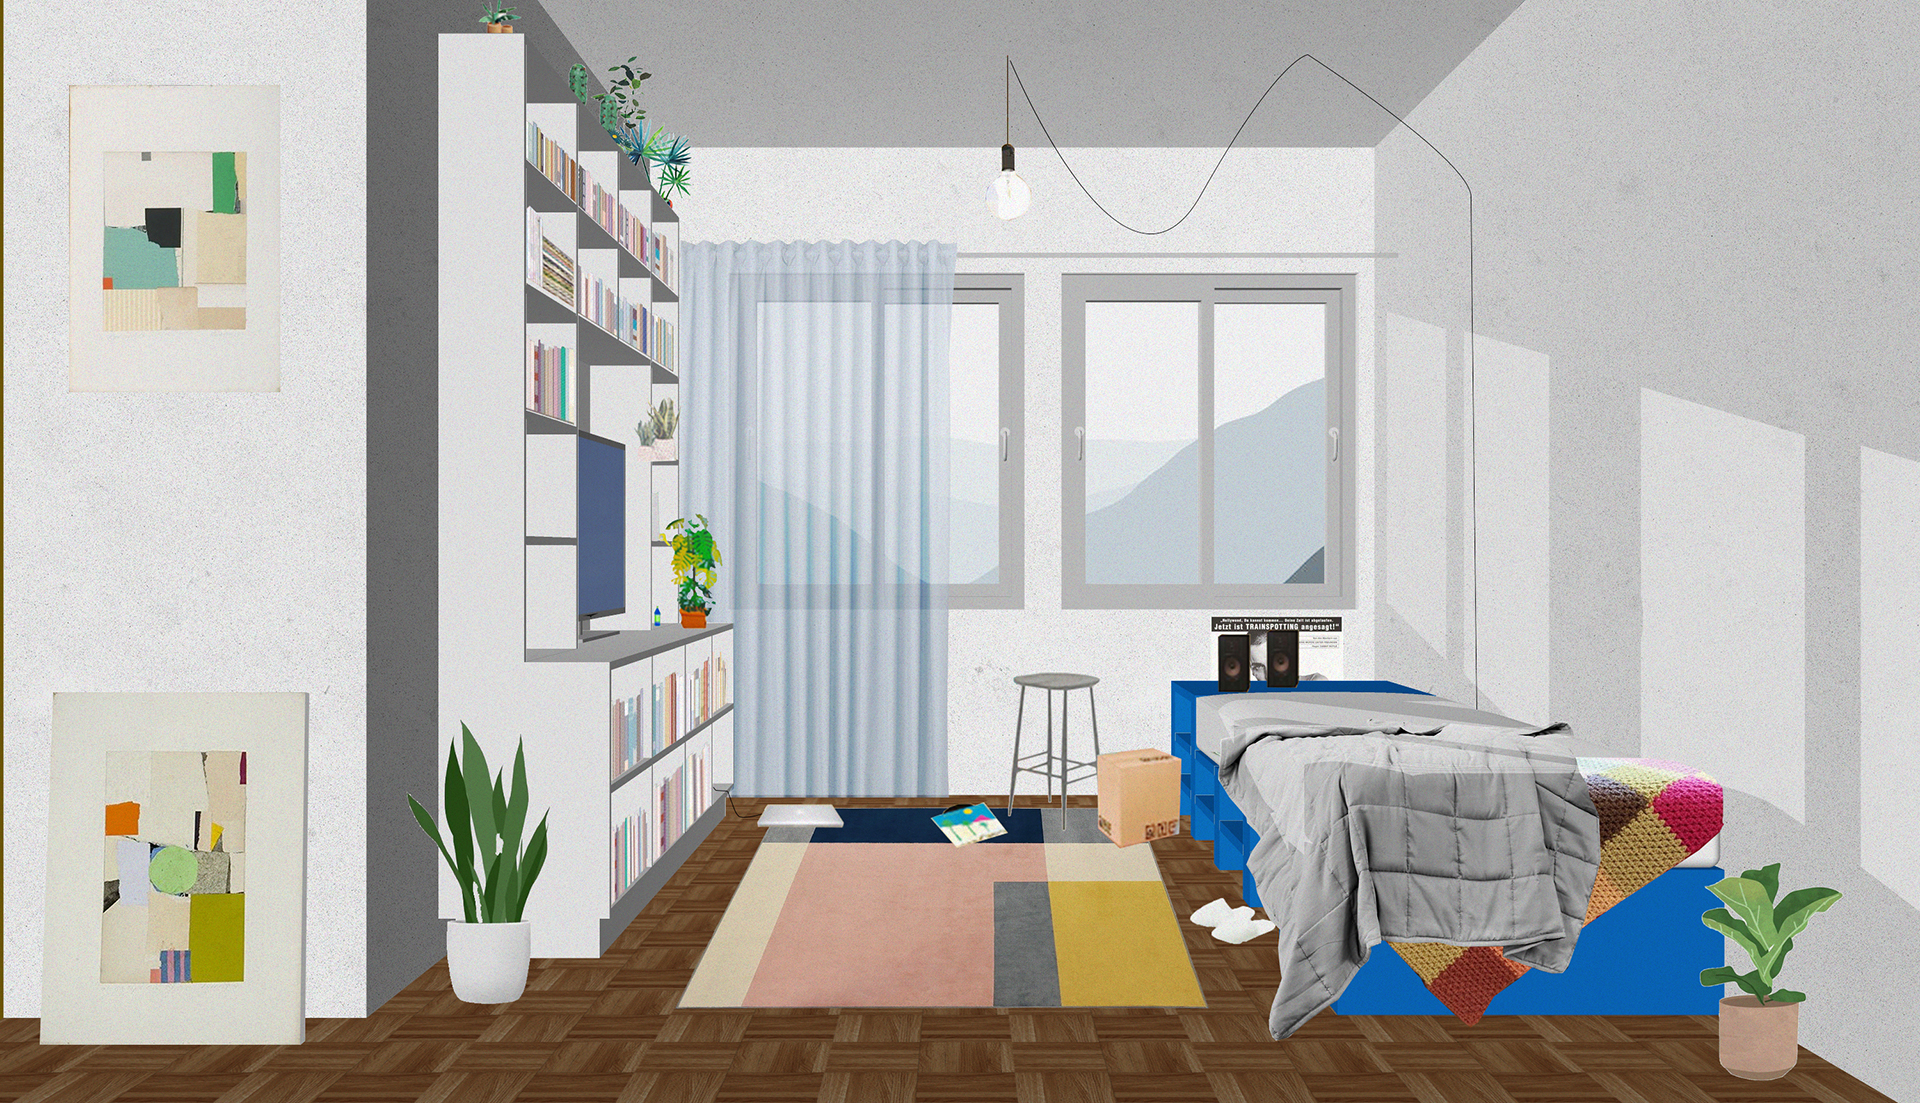 Imagem 3D de uma sala com estante, sofá, tapete e quadros.